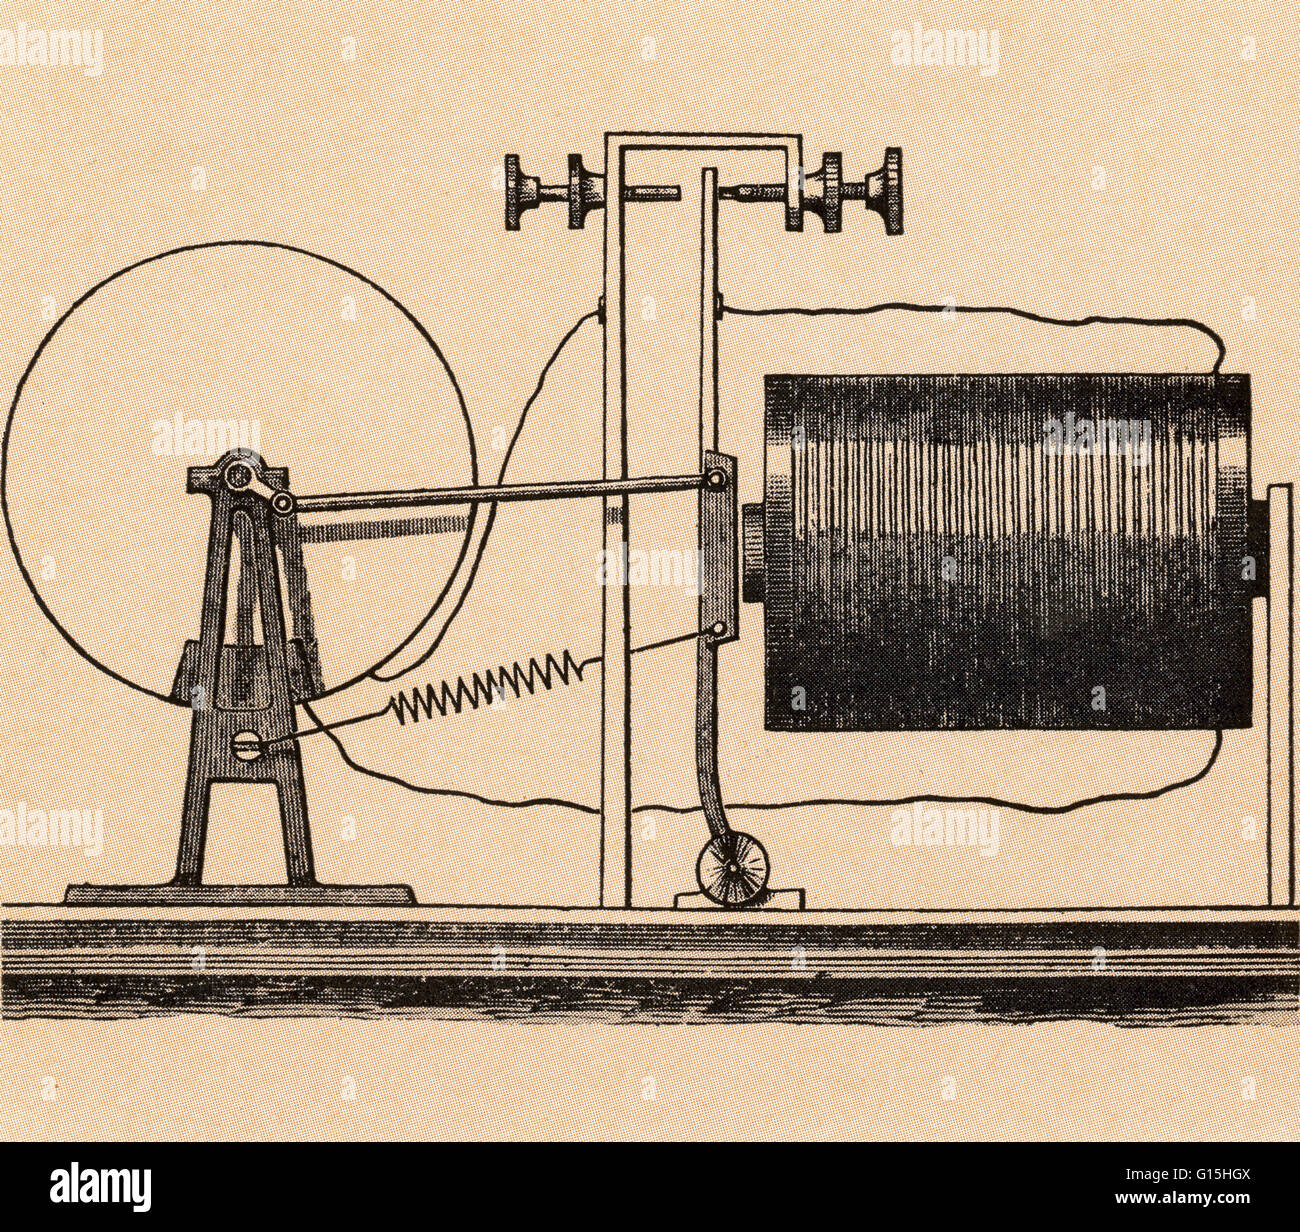 Perpetuum Mobile mit Strom versorgt wurde oft von 19. Jahrhundert Erfinder begünstigt. In diesem Entwurf arbeitete die Attraktion eines Elektromagneten durch eine Kurbel, eine Rad zu drehen; dann sollte der Raddrehung th arbeiten mit Strom erzeugen Stockfoto